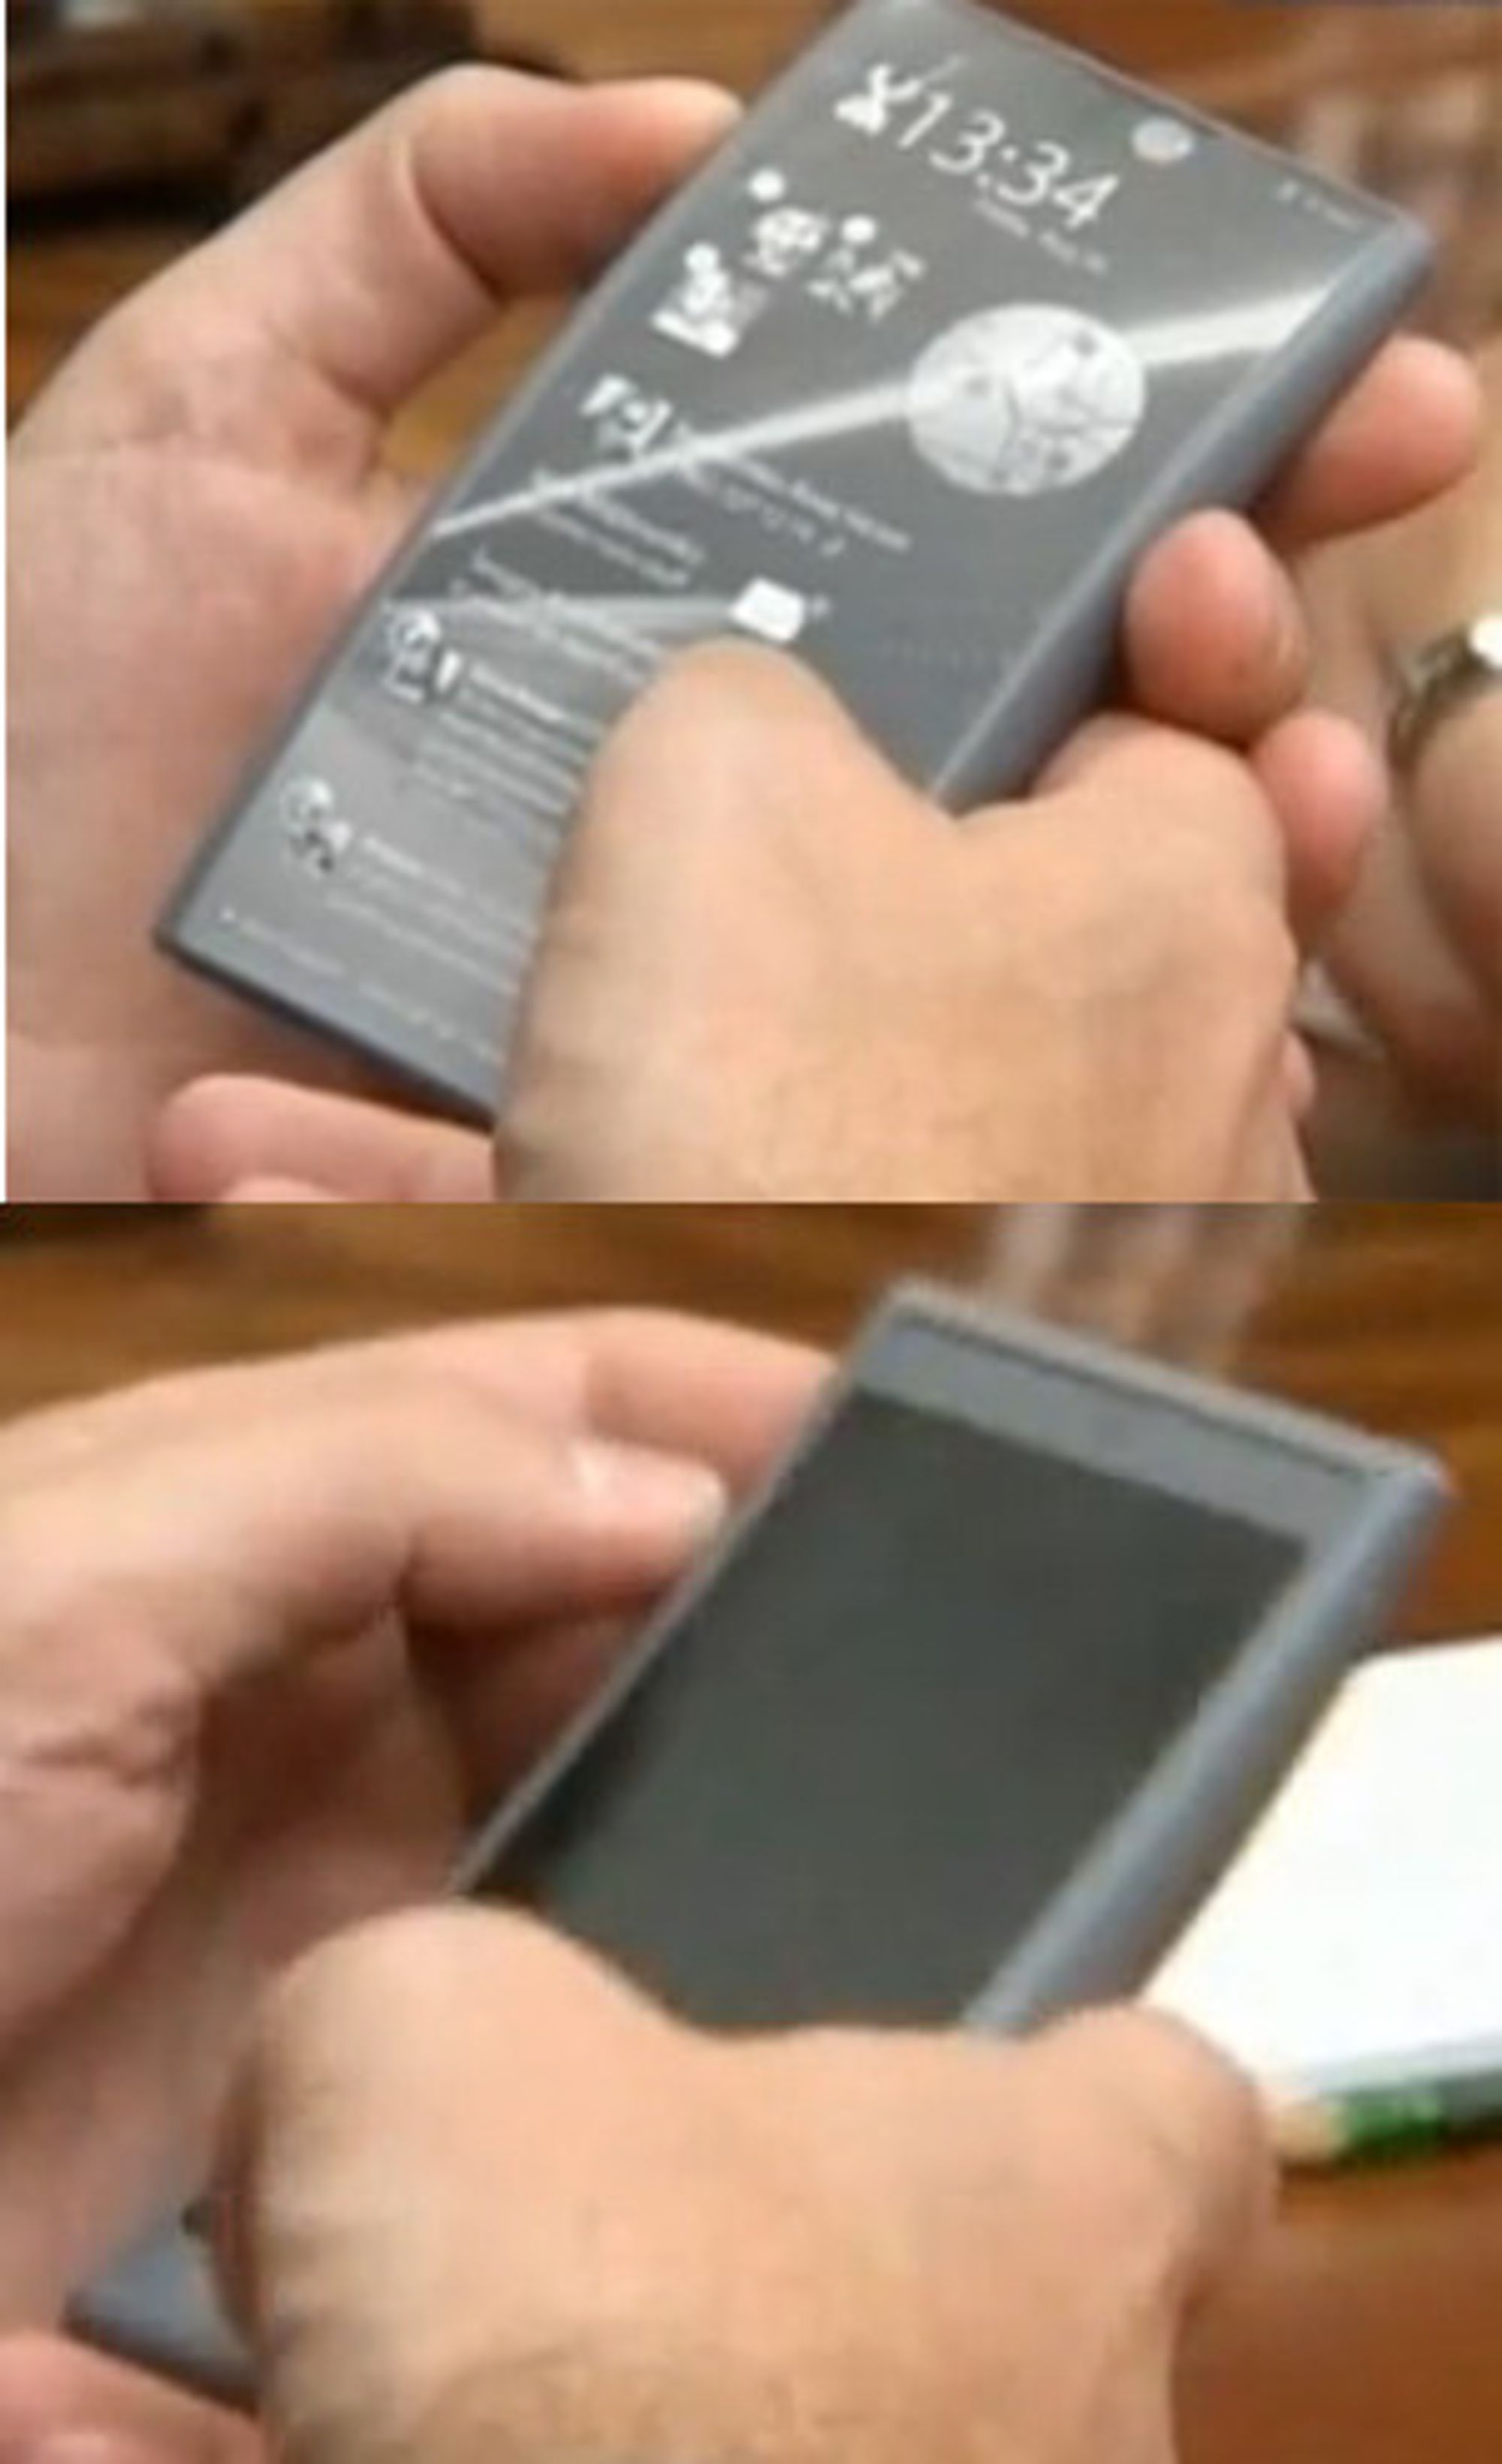 Prototyp av Android-mobilen til Rostekhnologii - baksiden. Bildet øverst viser baksiden, mens forsiden er delvis synlig på den nederste bildet.